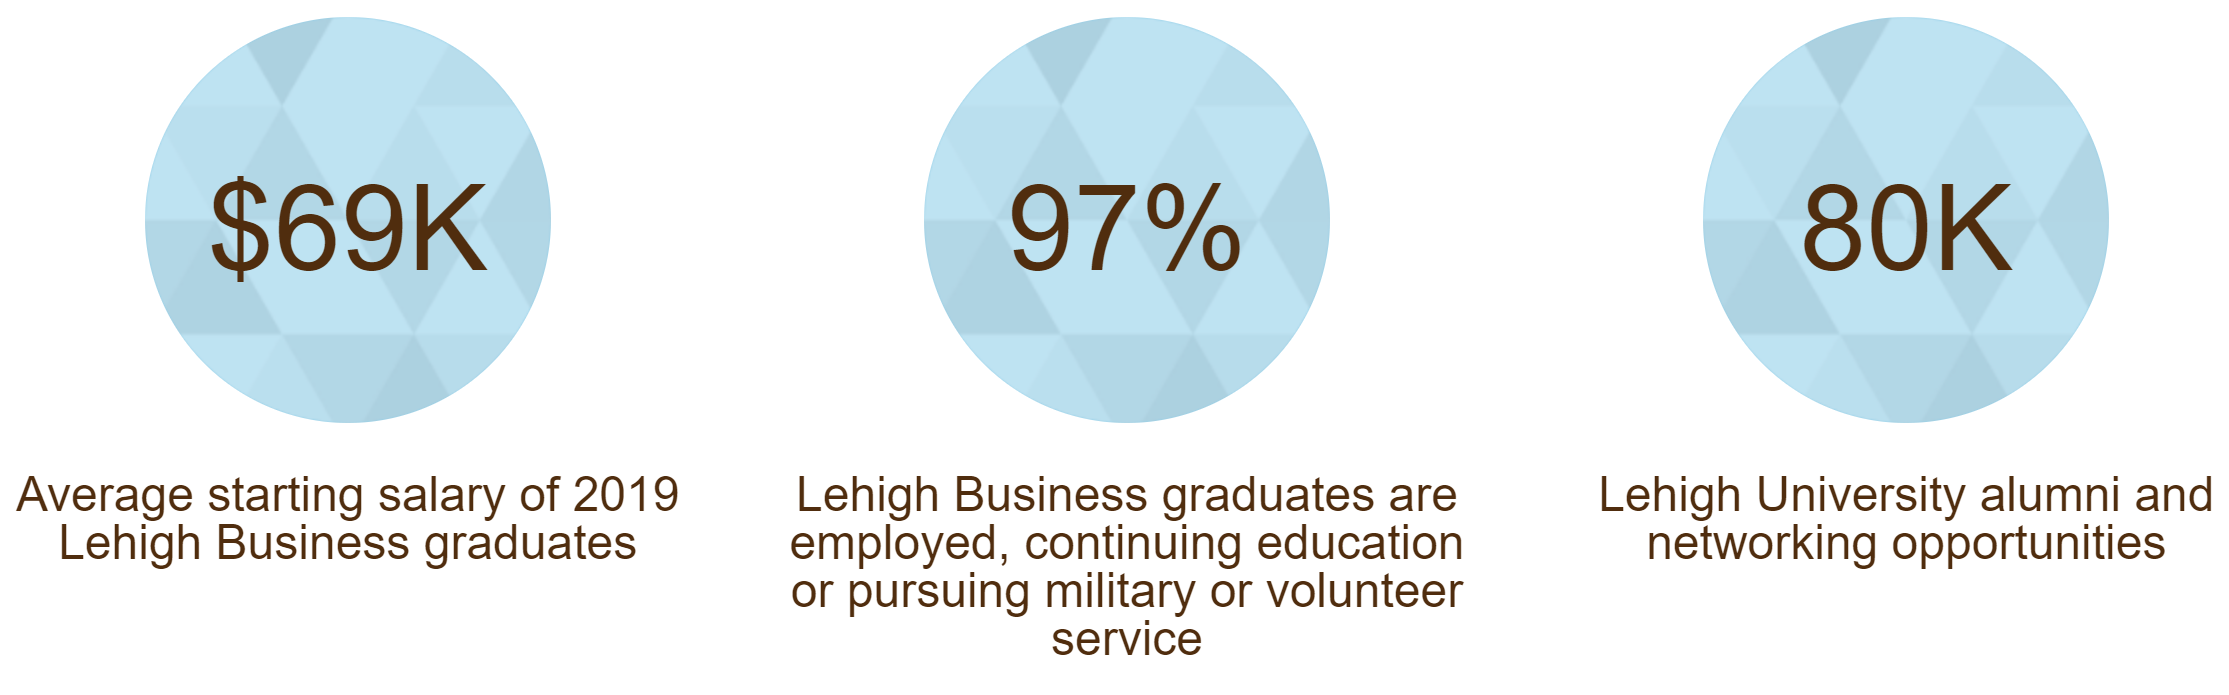 未来人留学-理海大学(Lehigh University)商学院热门硕士课程推荐及申请详情。